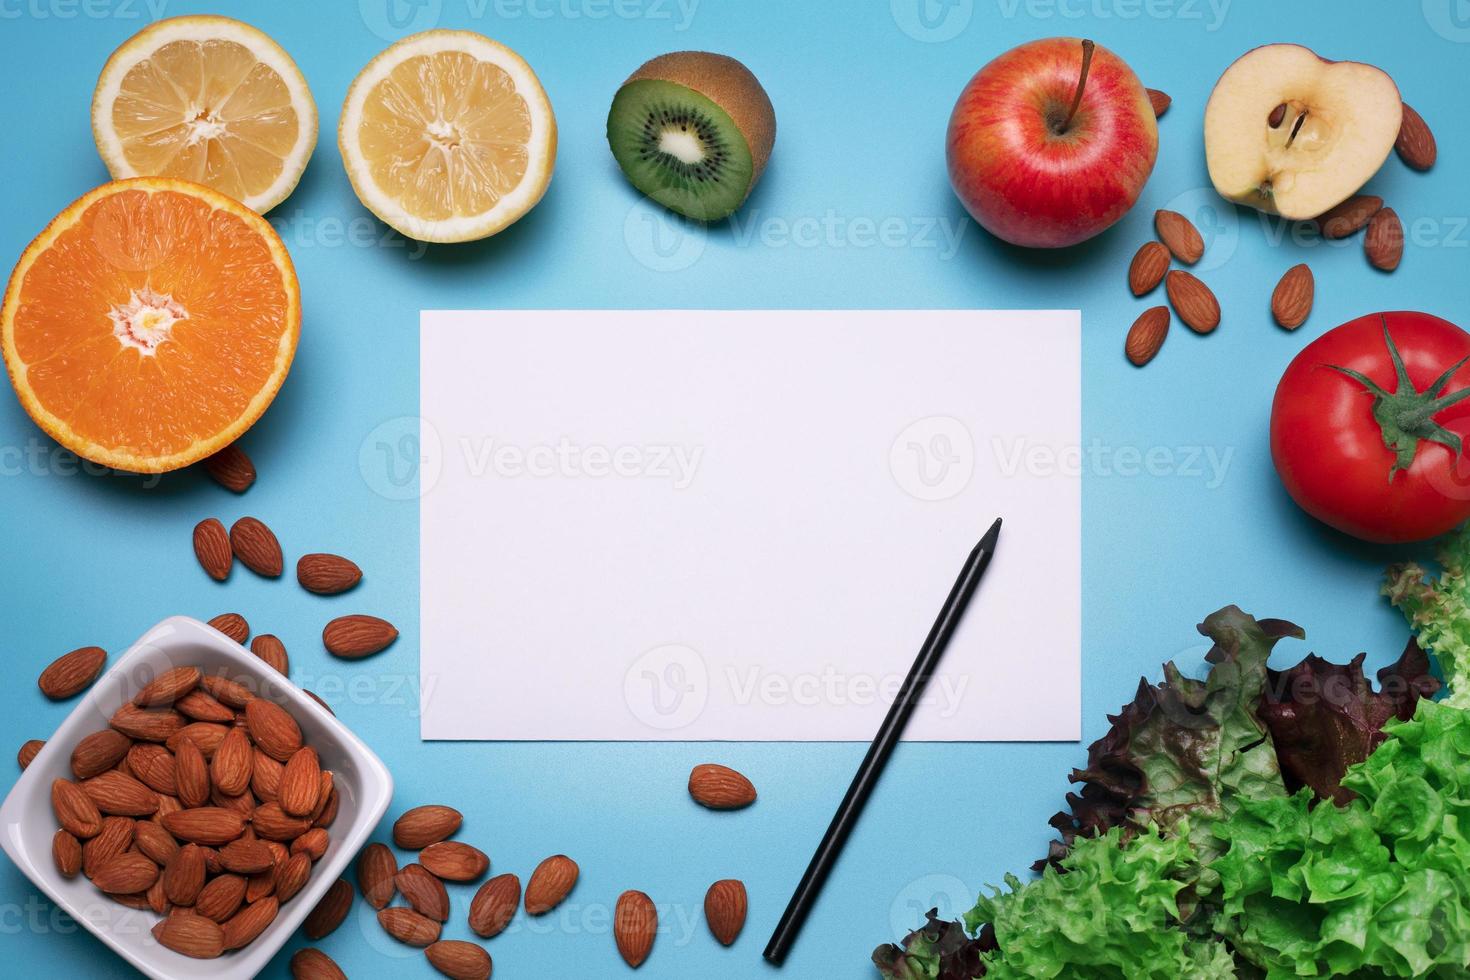 diseño creativo hecho de varias frutas, verduras y nueces con hoja de papel blanco. endecha plana, fondo azul. espacio libre para texto. concepto de comida saludable foto